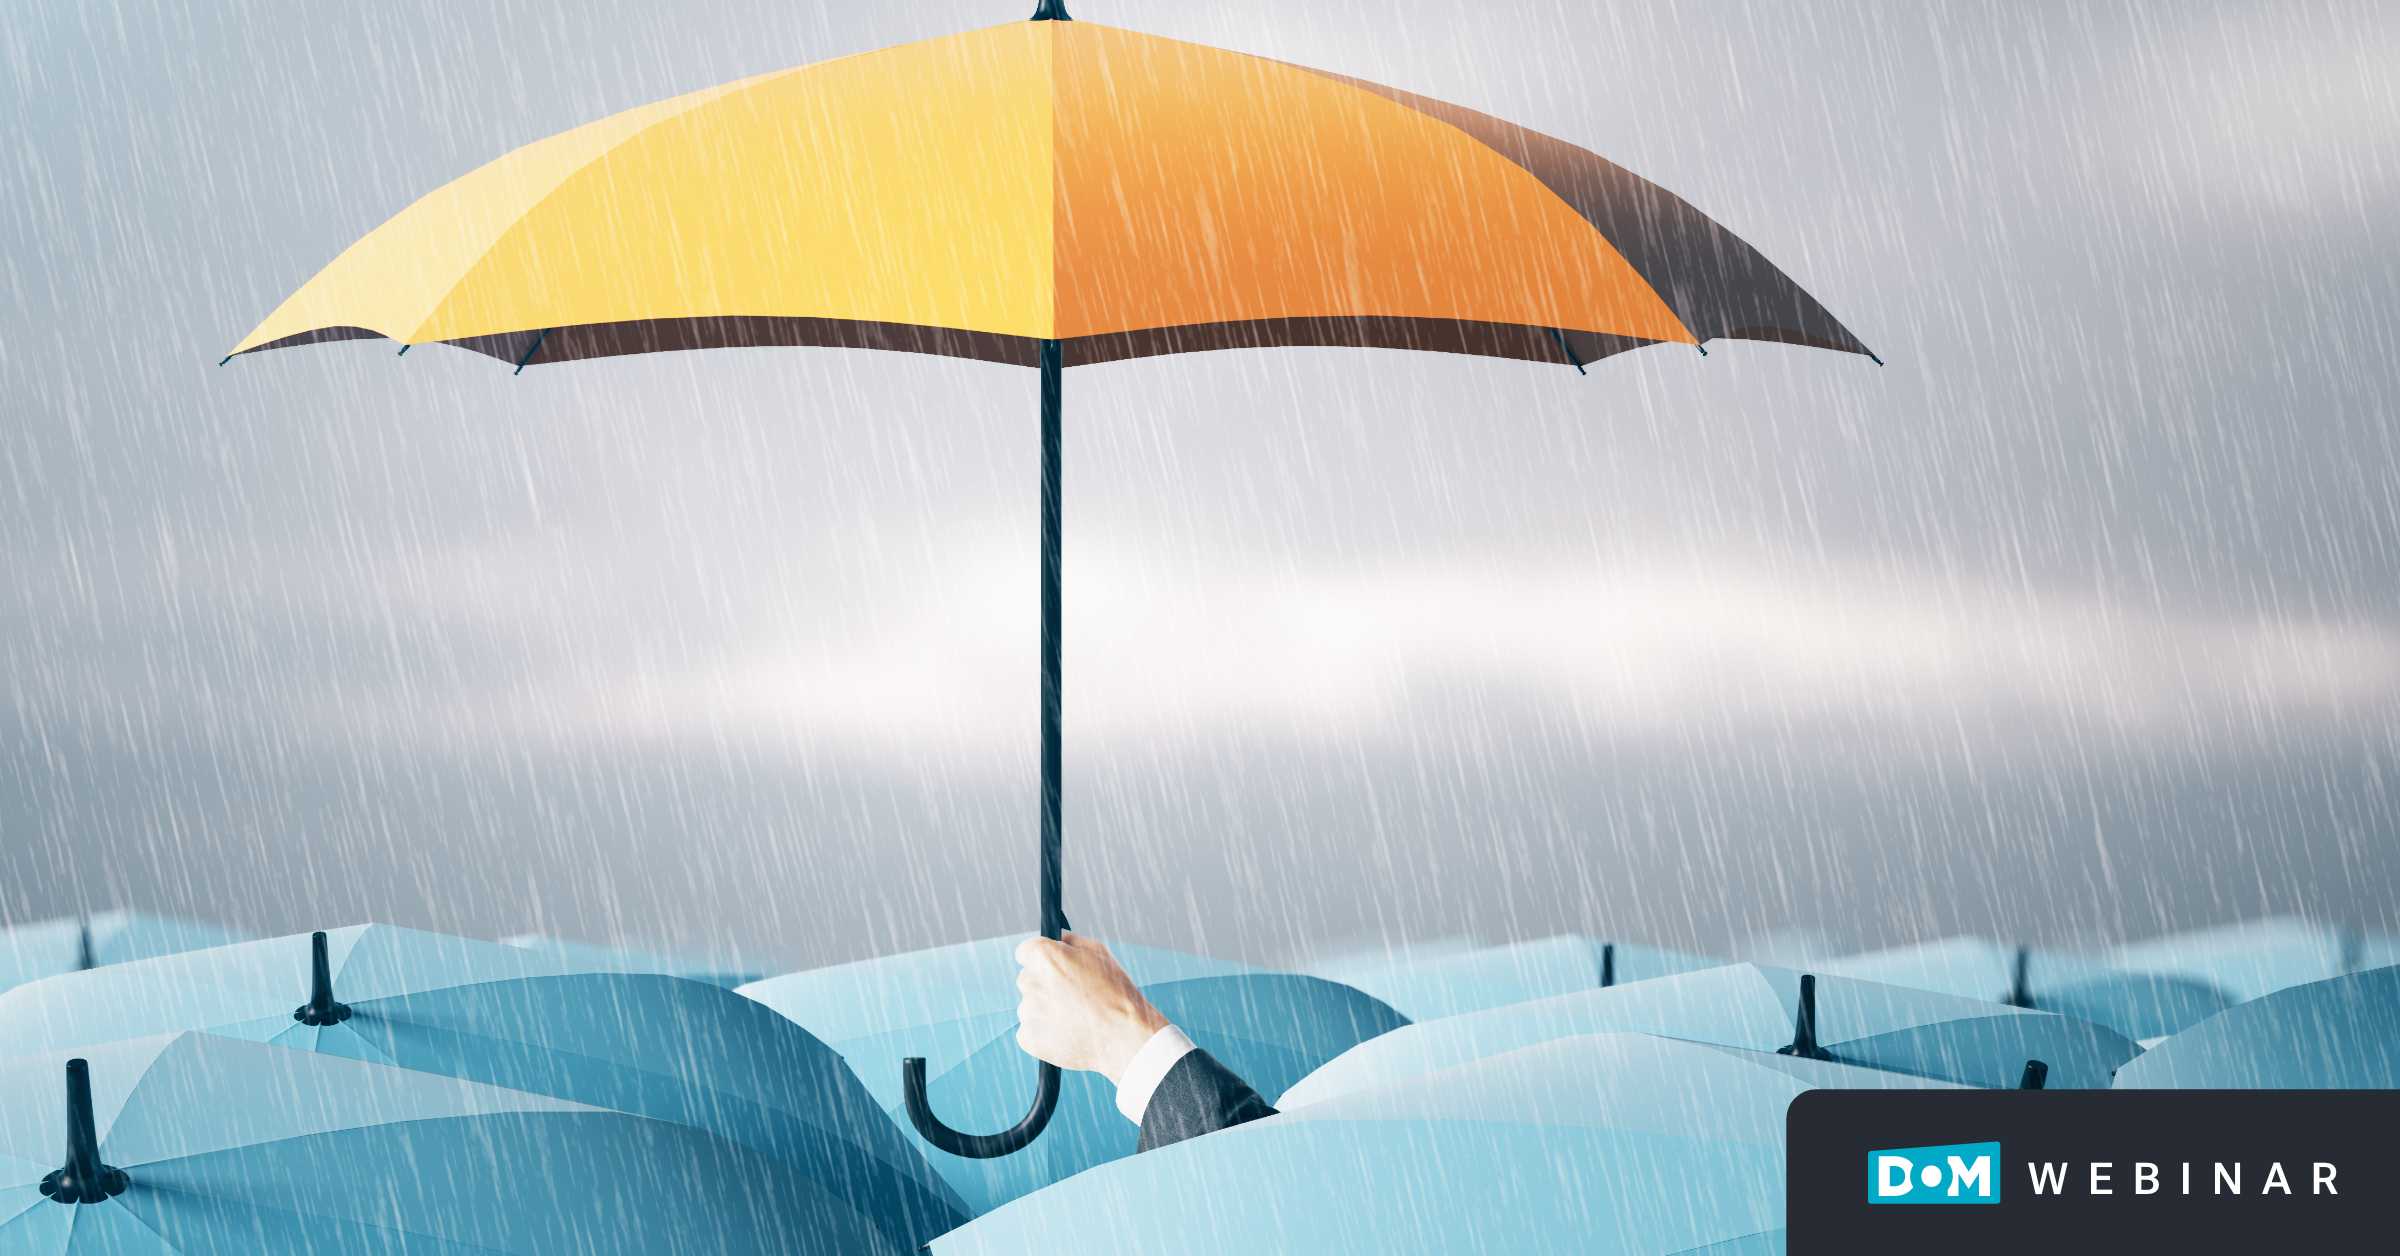 Crisis Marketing | Graphic of Umbrella in the Ocean